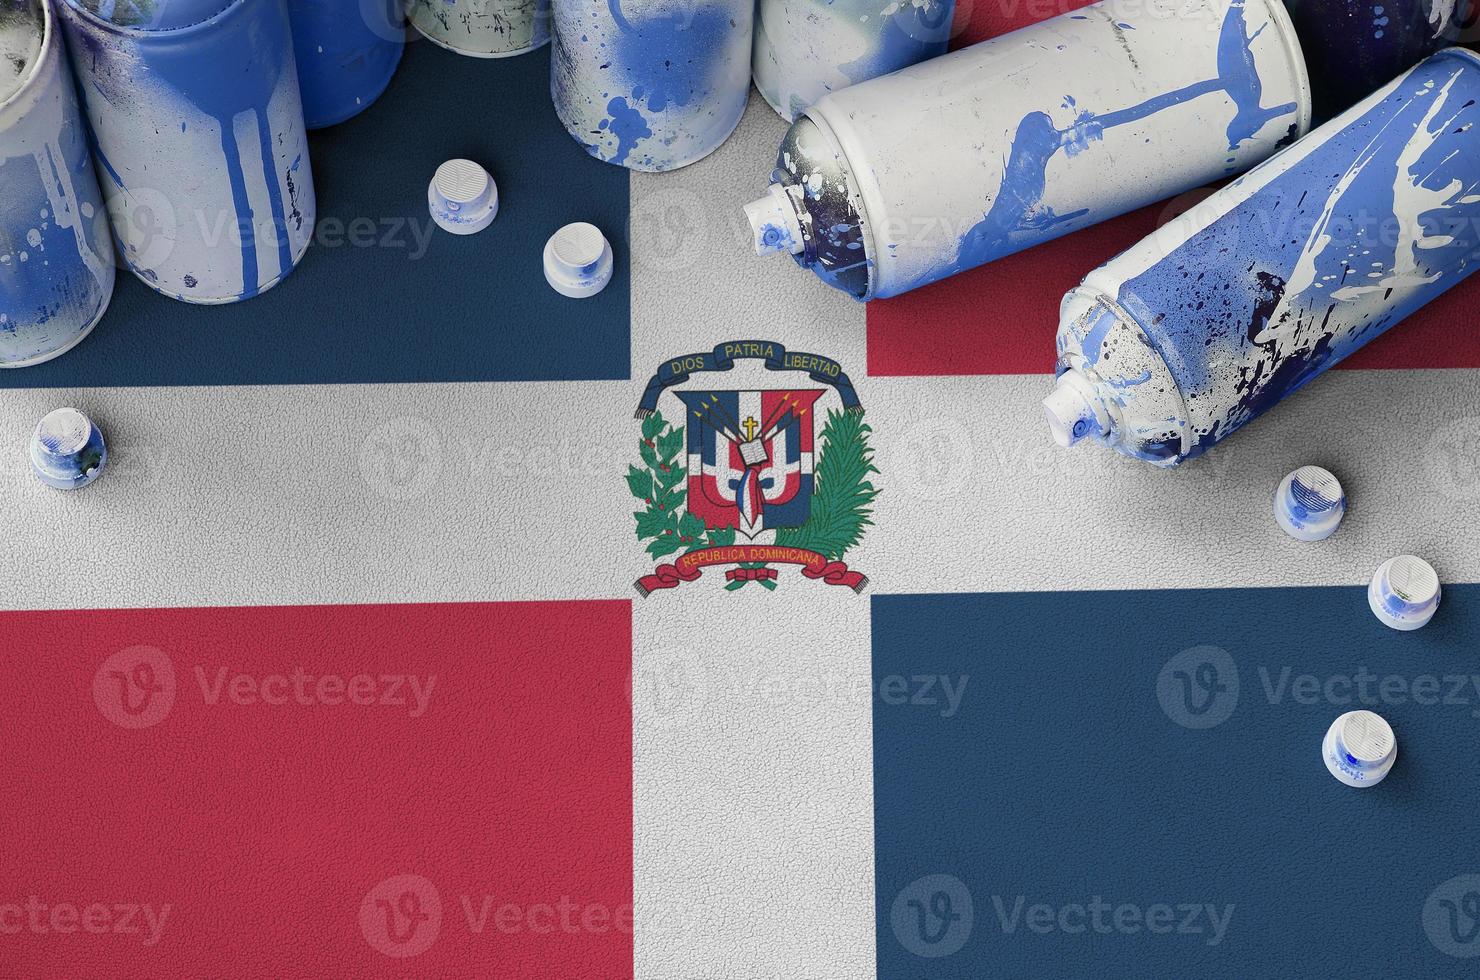 Dominikanska republik flagga och få Begagnade aerosol spray burkar för graffiti målning. gata konst kultur begrepp foto